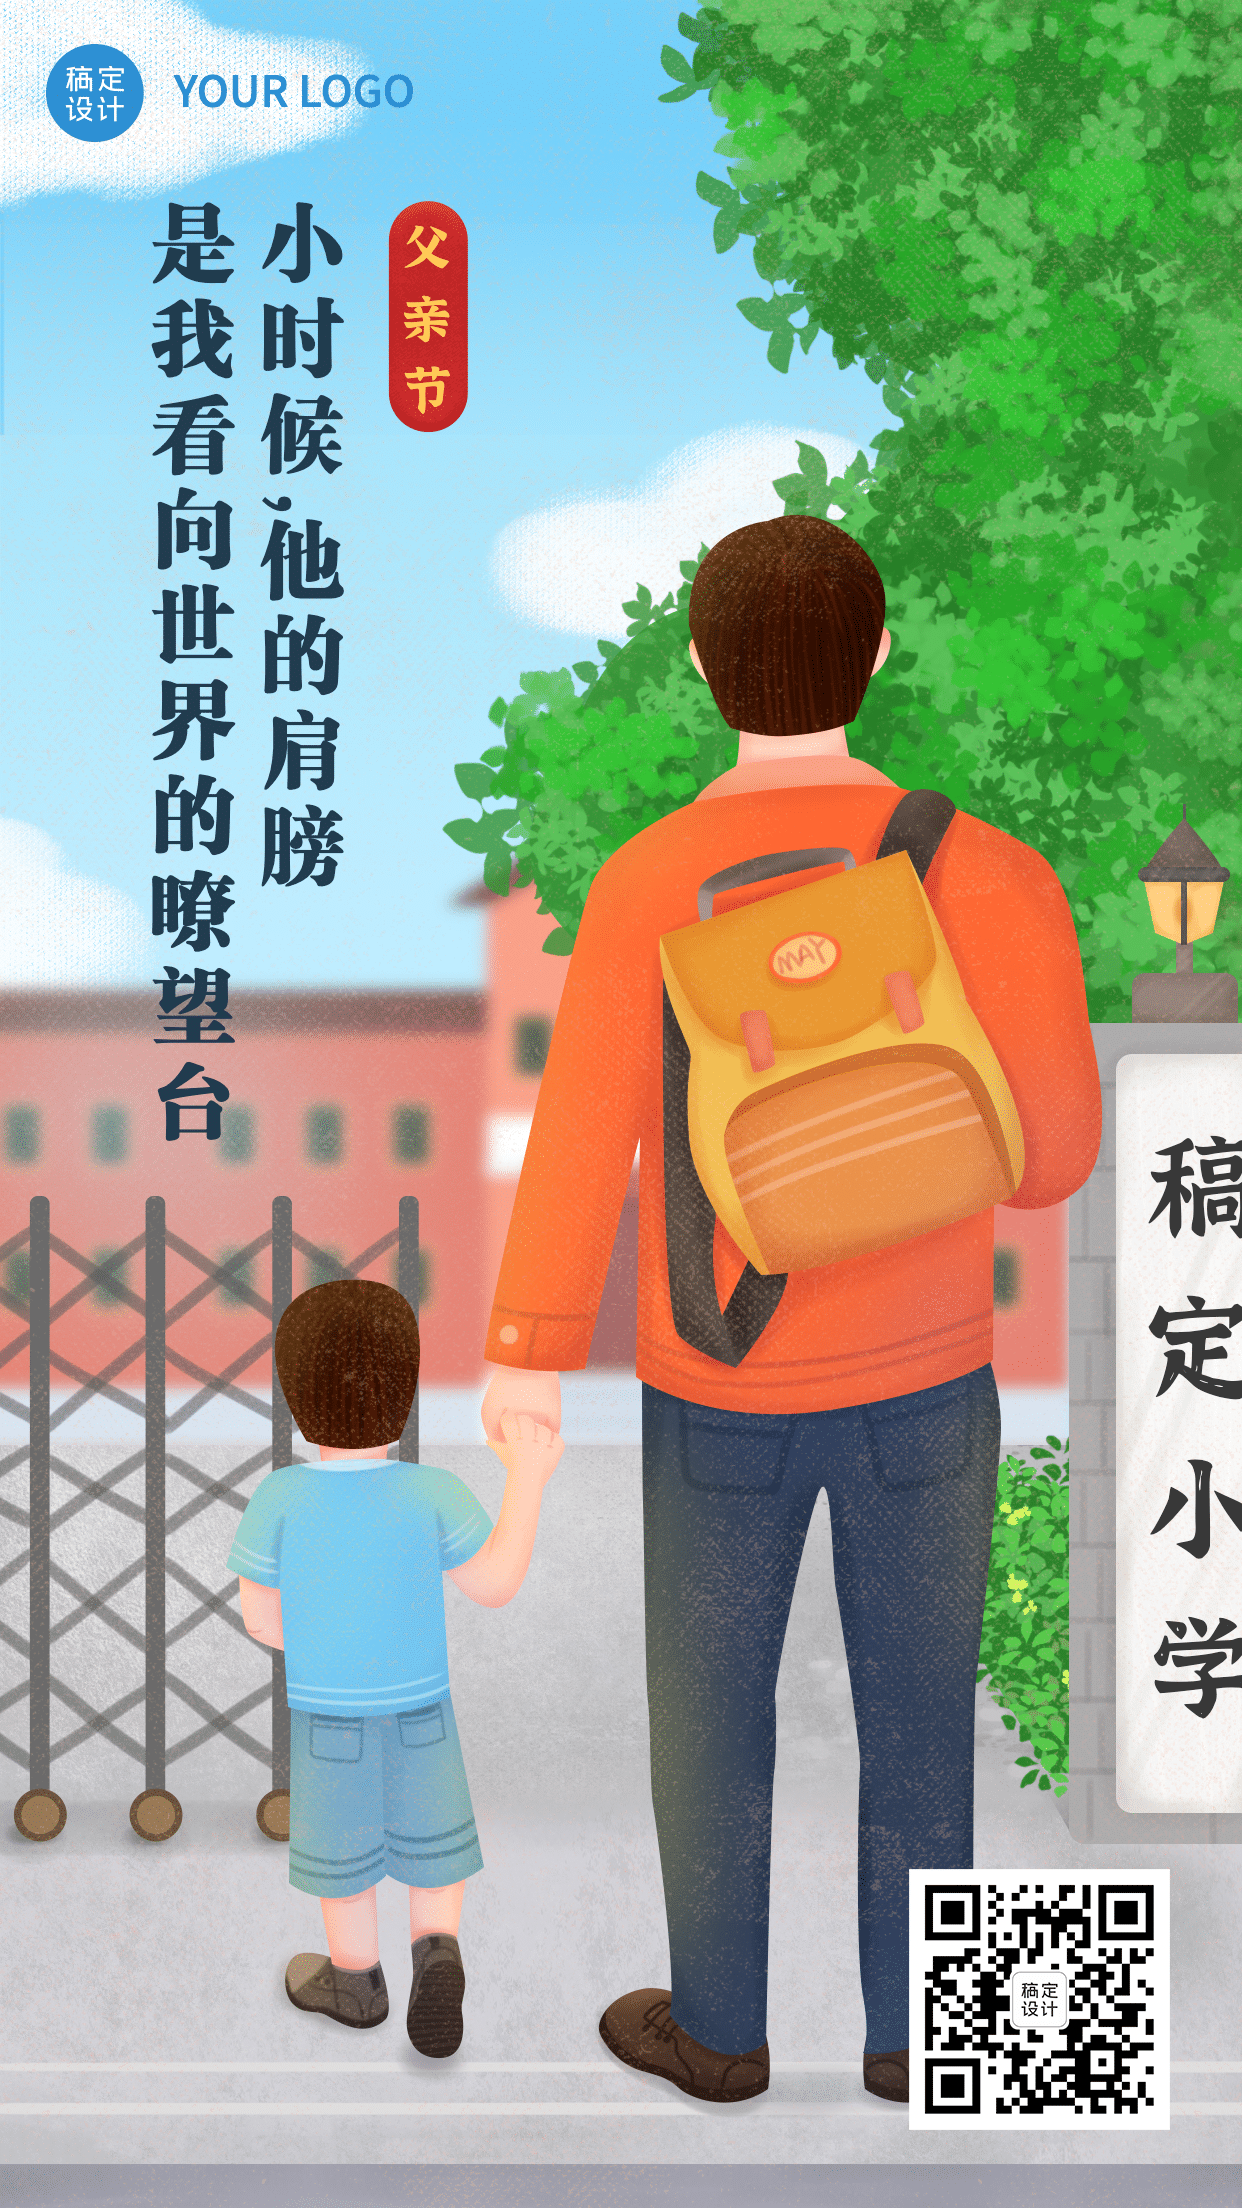 父亲节祝福温情营销插画手机海报